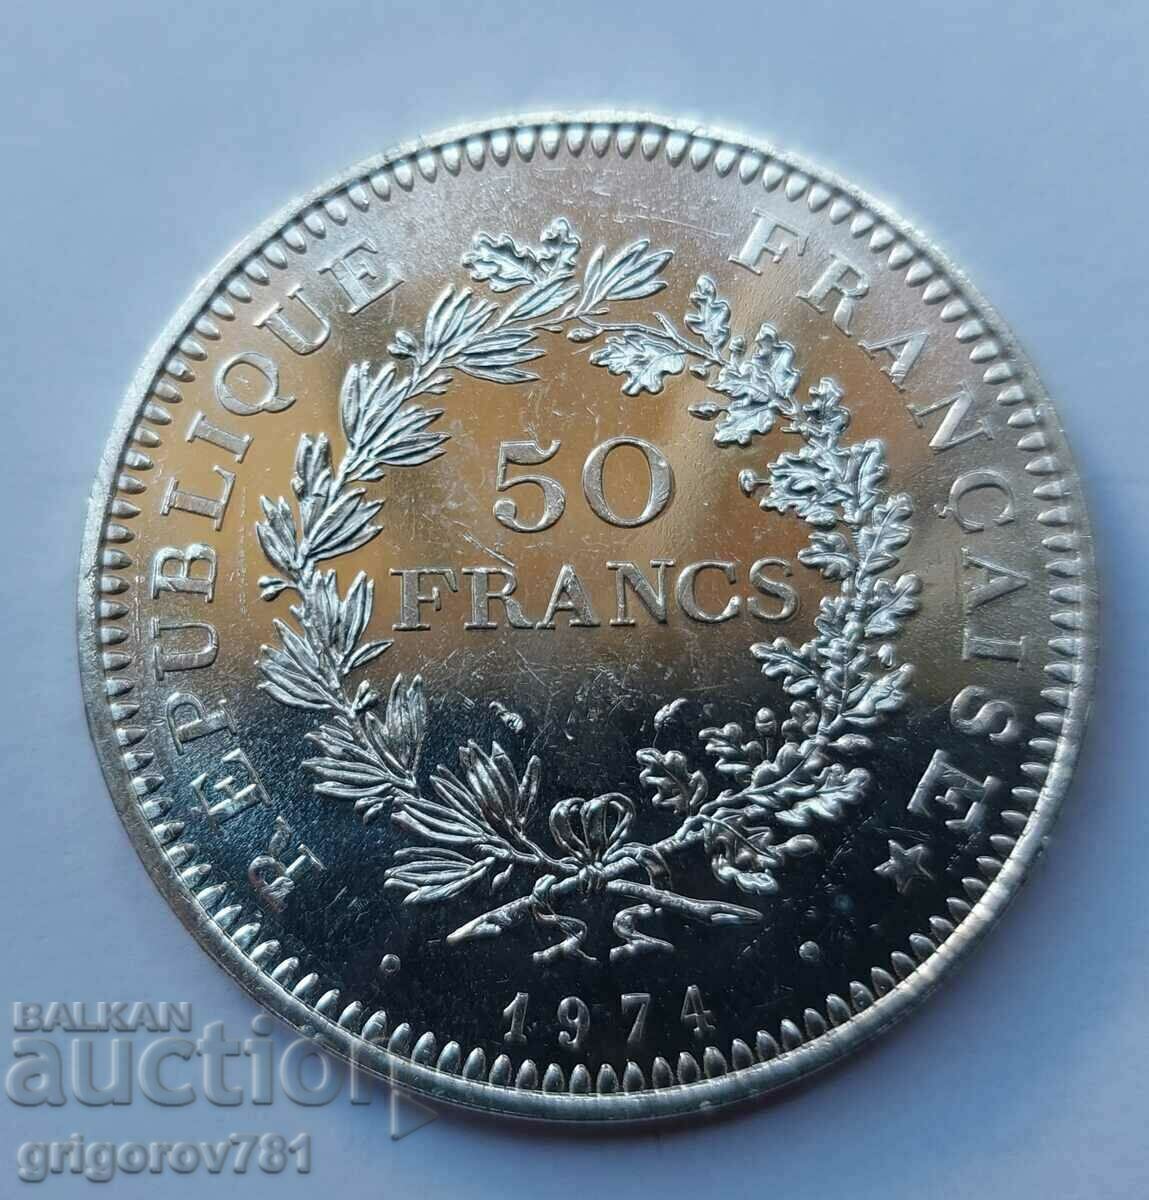 50 Franci Argint Franta 1974 - Moneda de argint #18